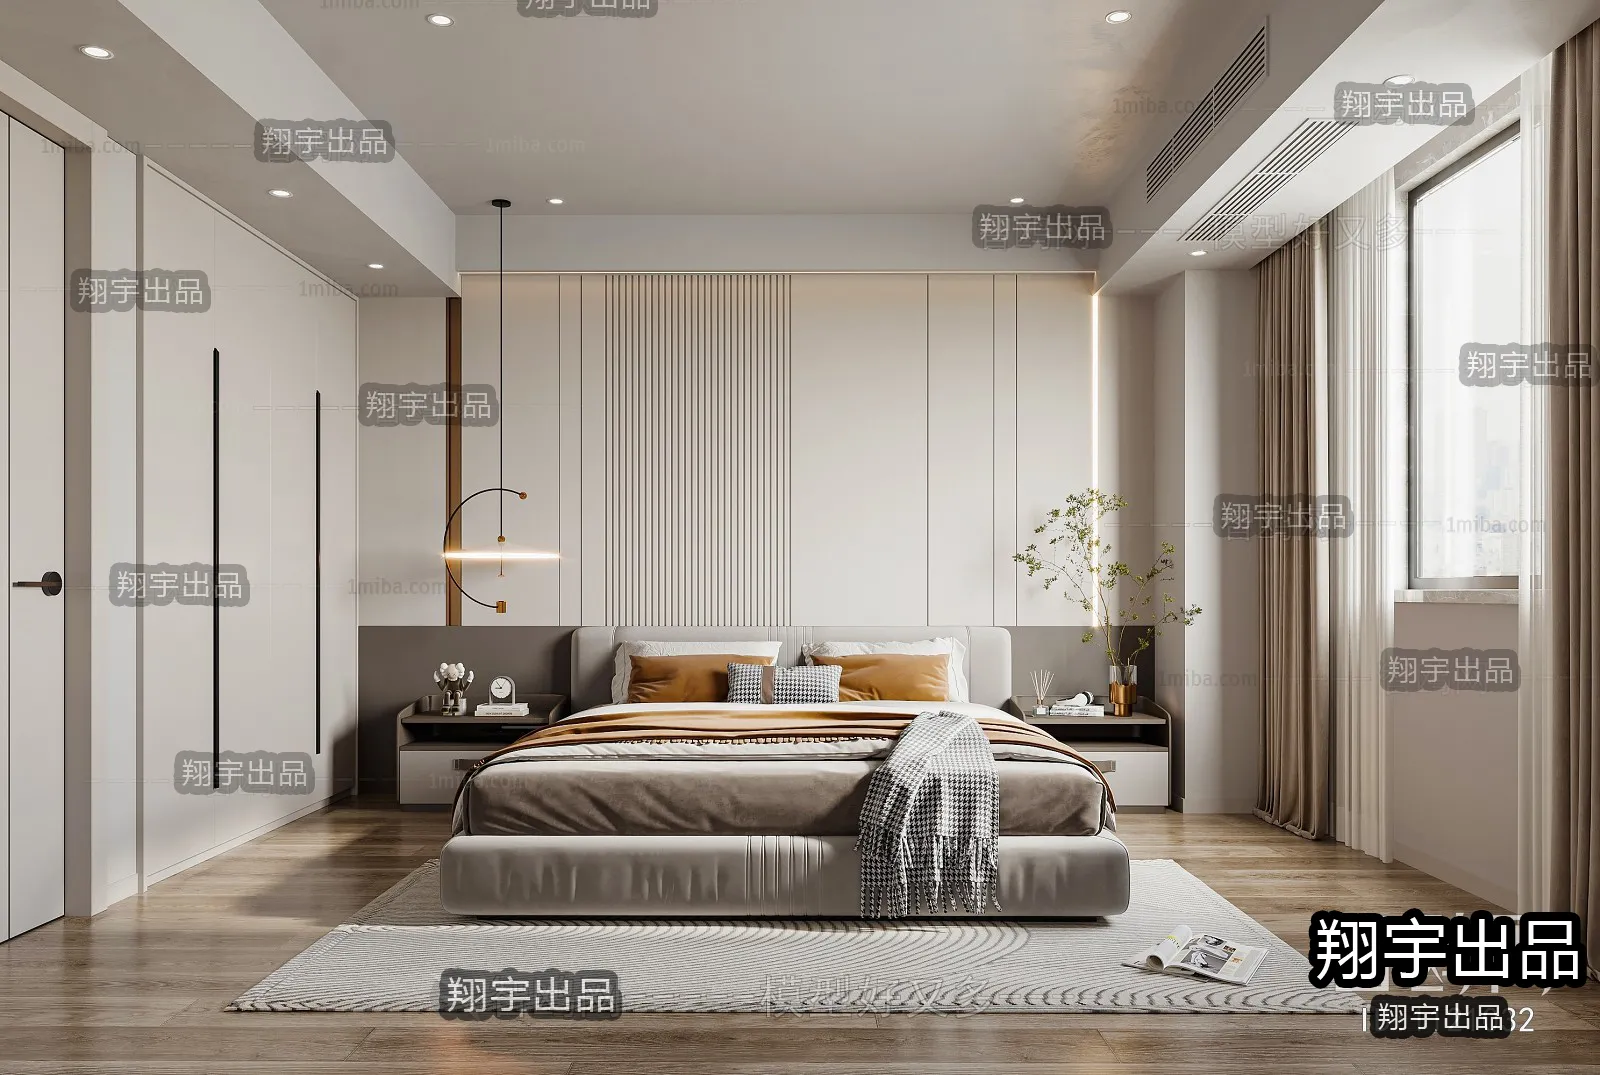 Bedroom – Modern Interior Design – 3D Models – 021